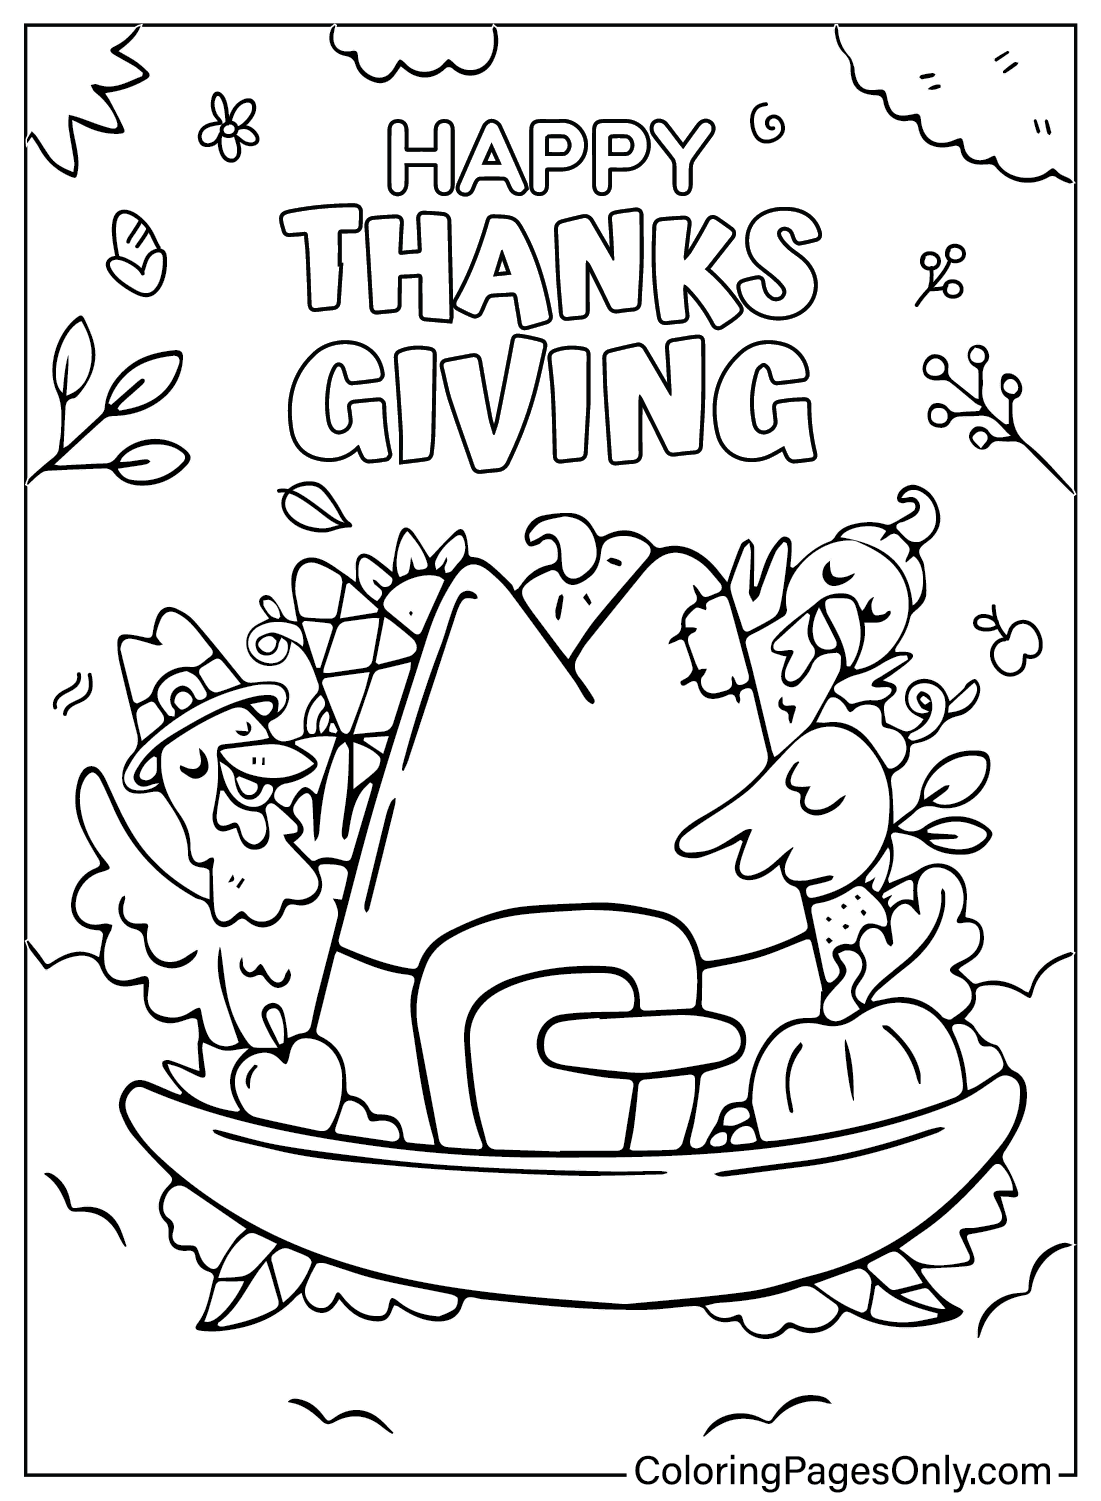 Caricatura de Acción de Gracias para colorear de Caricatura de Acción de Gracias